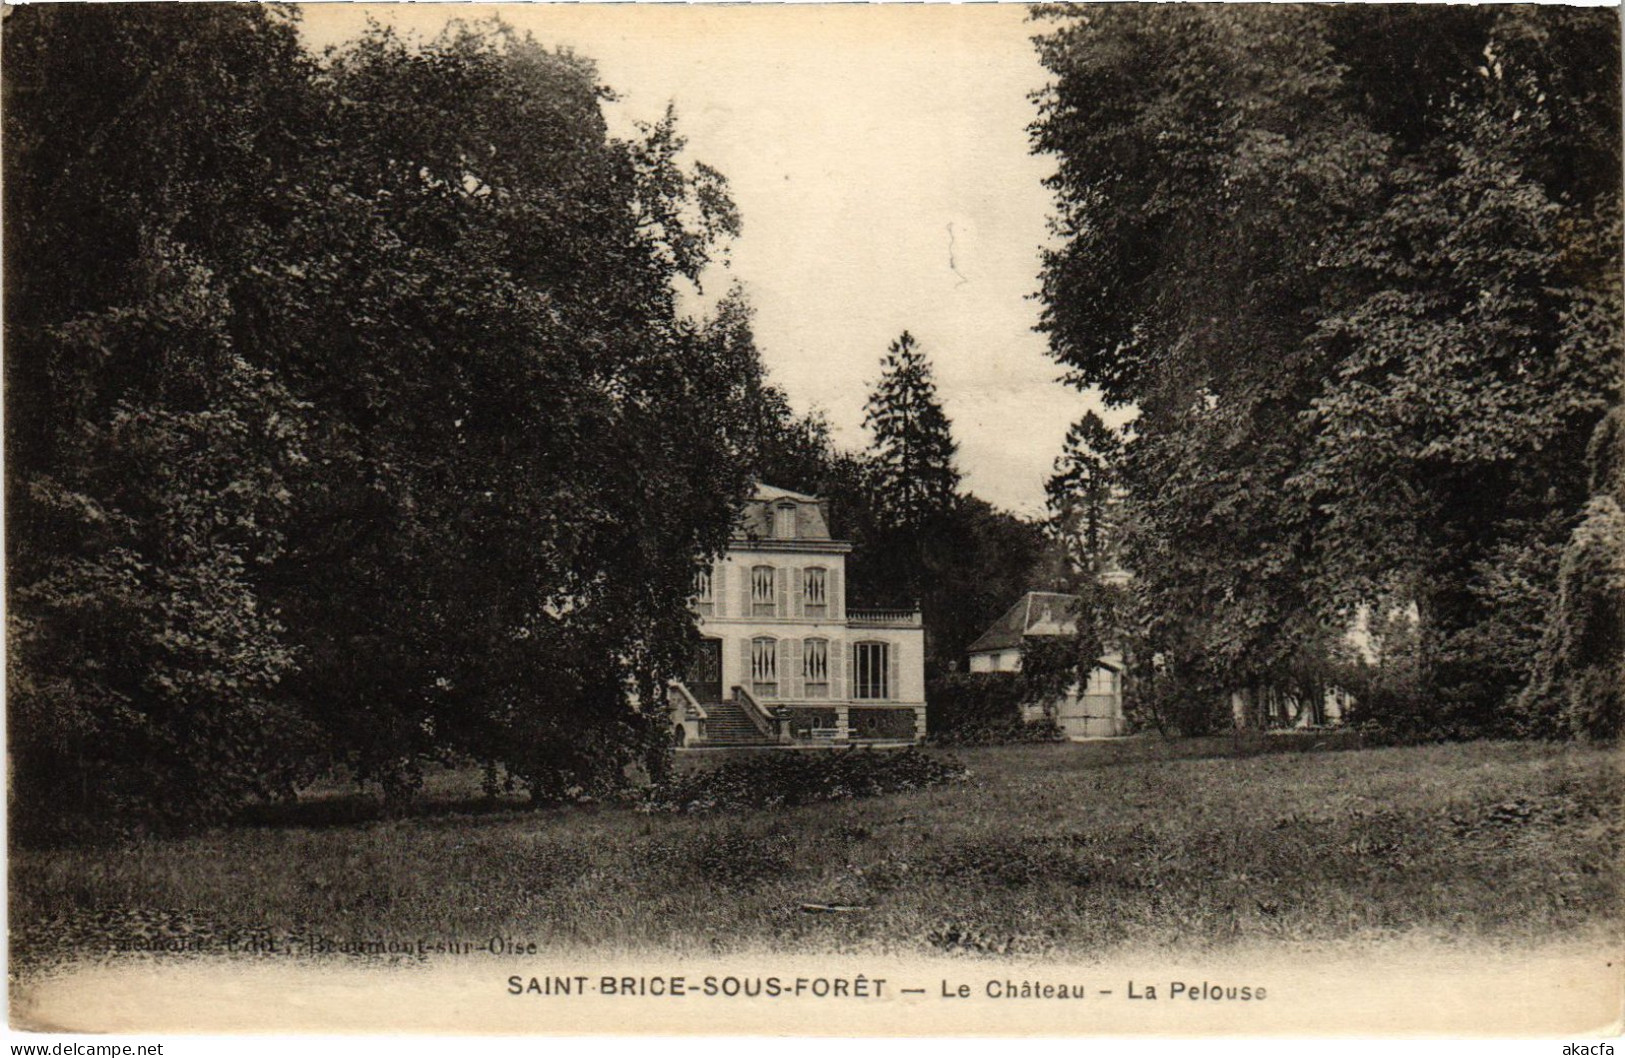 CPA St Brice Le Chateau La Pelouse (1317692) - Saint-Brice-sous-Forêt